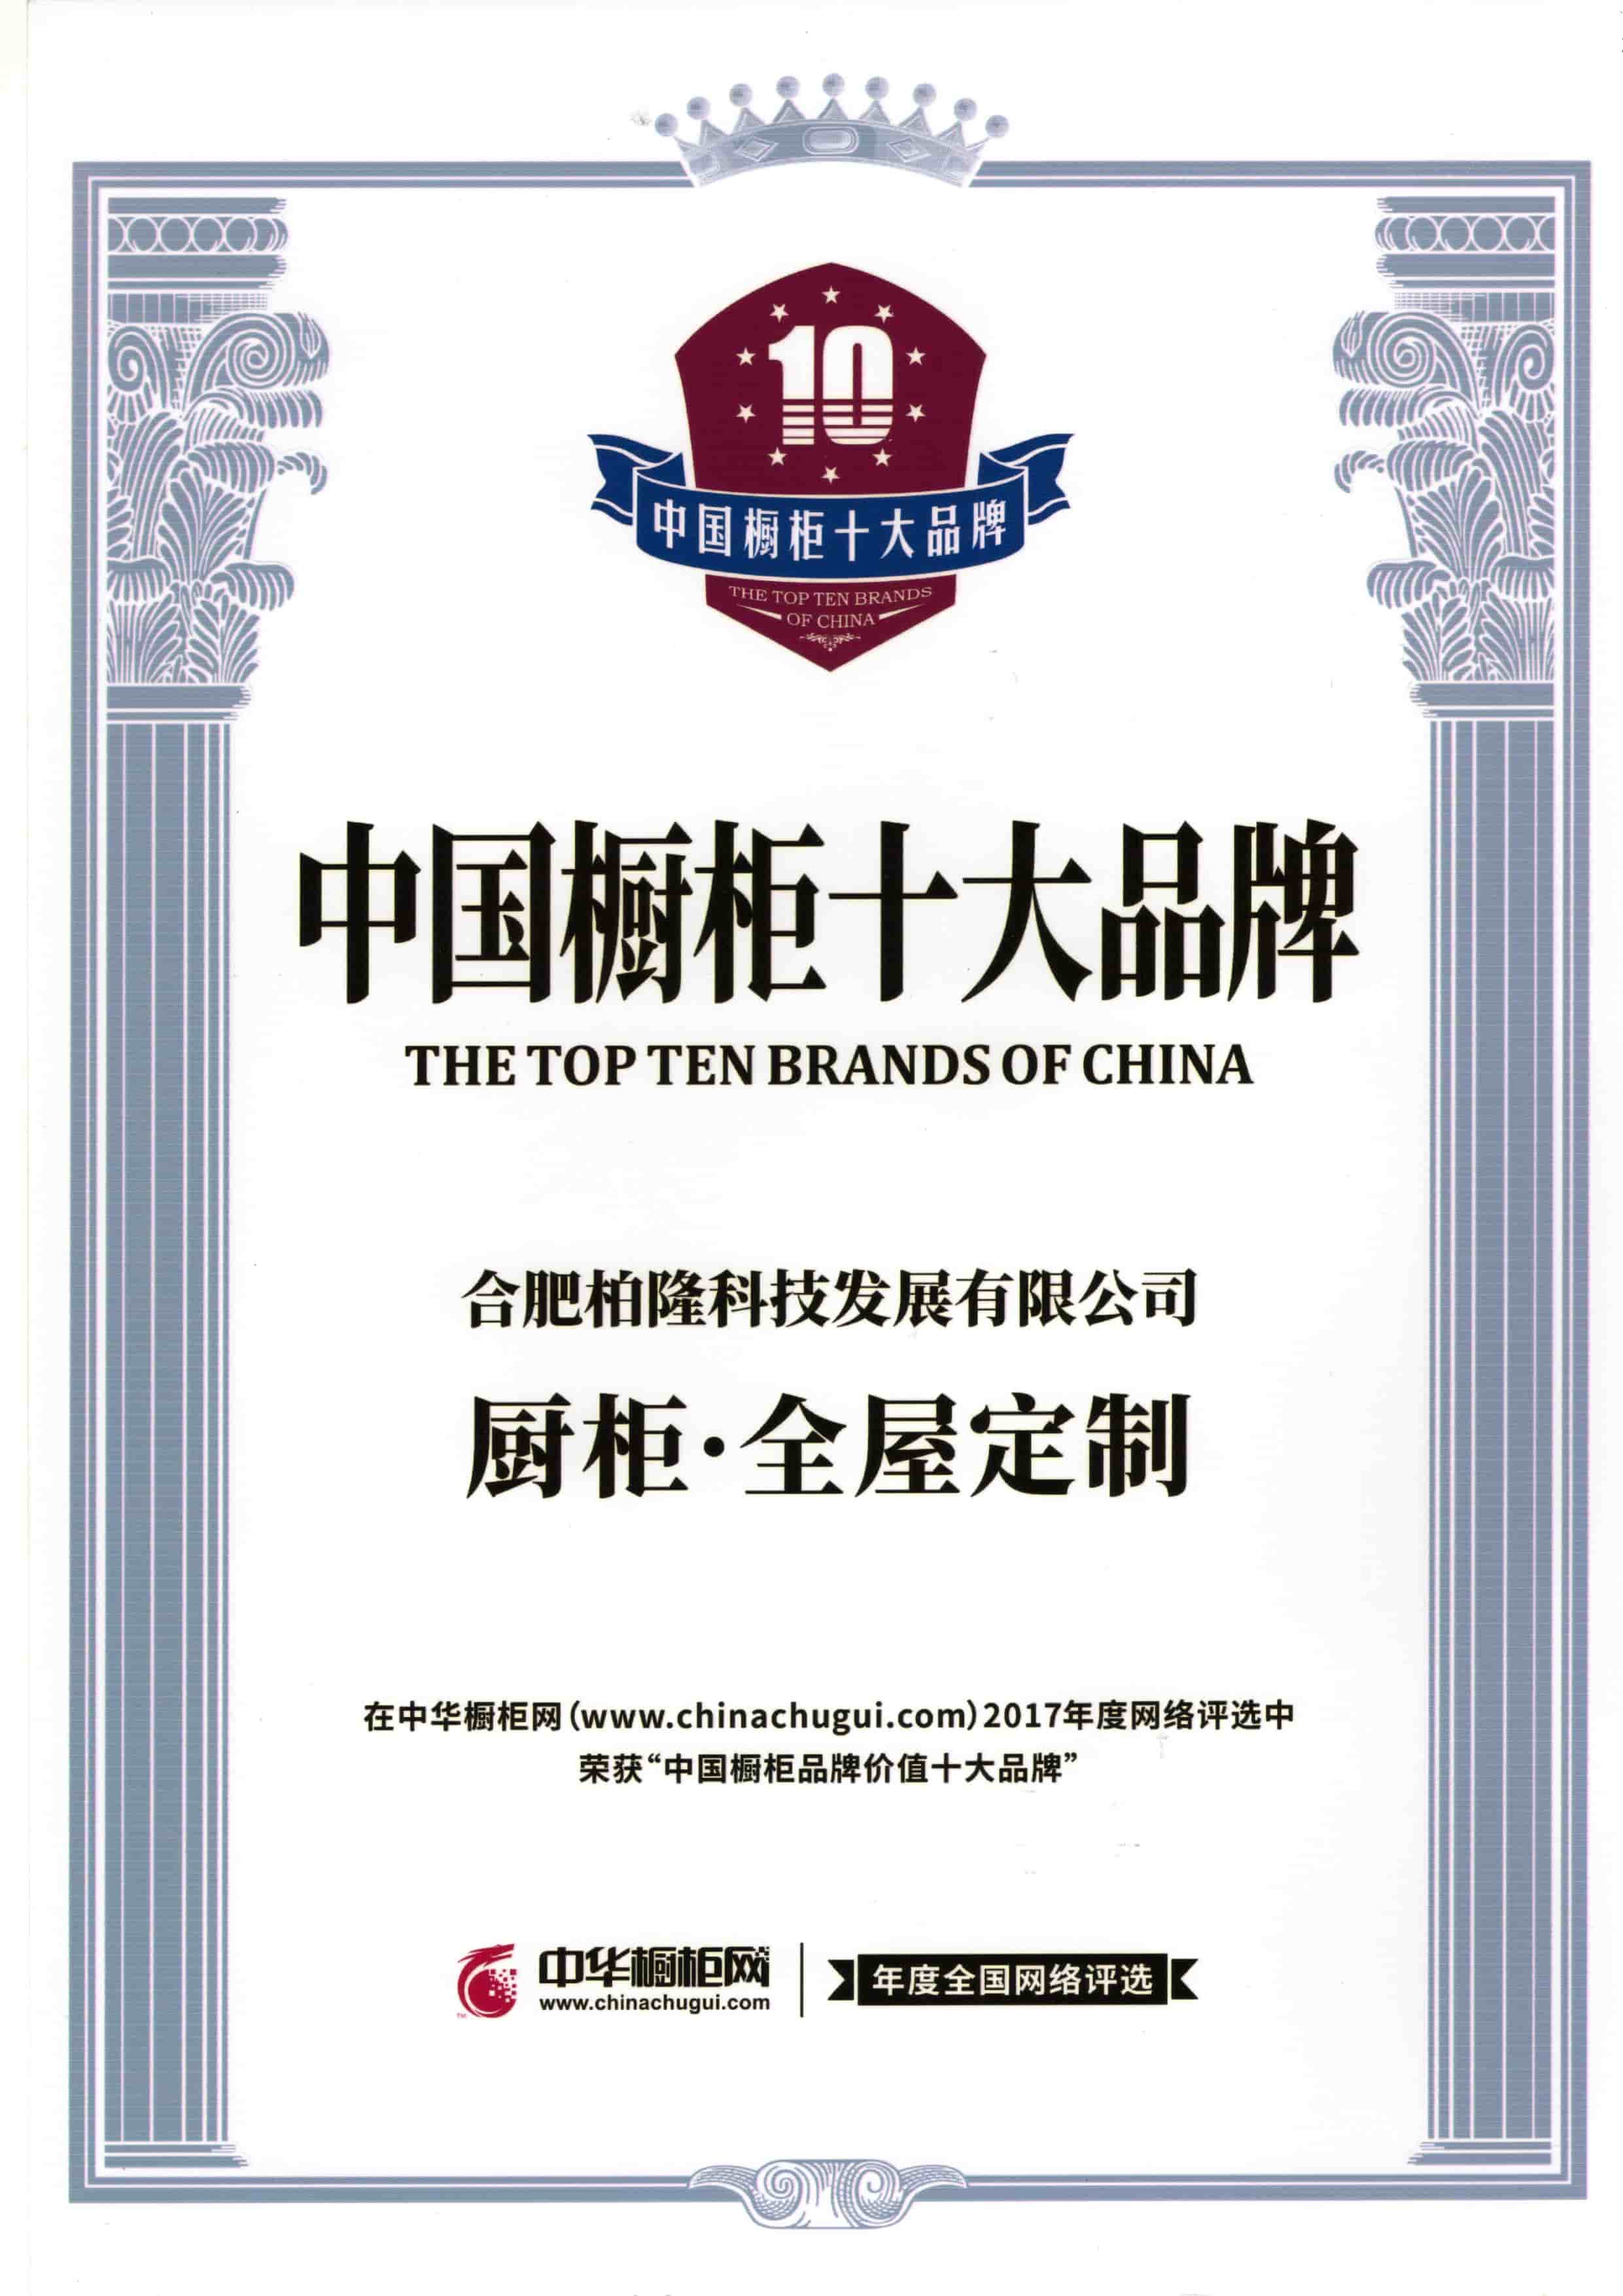 Eine der Top-Ten-Marken in China
